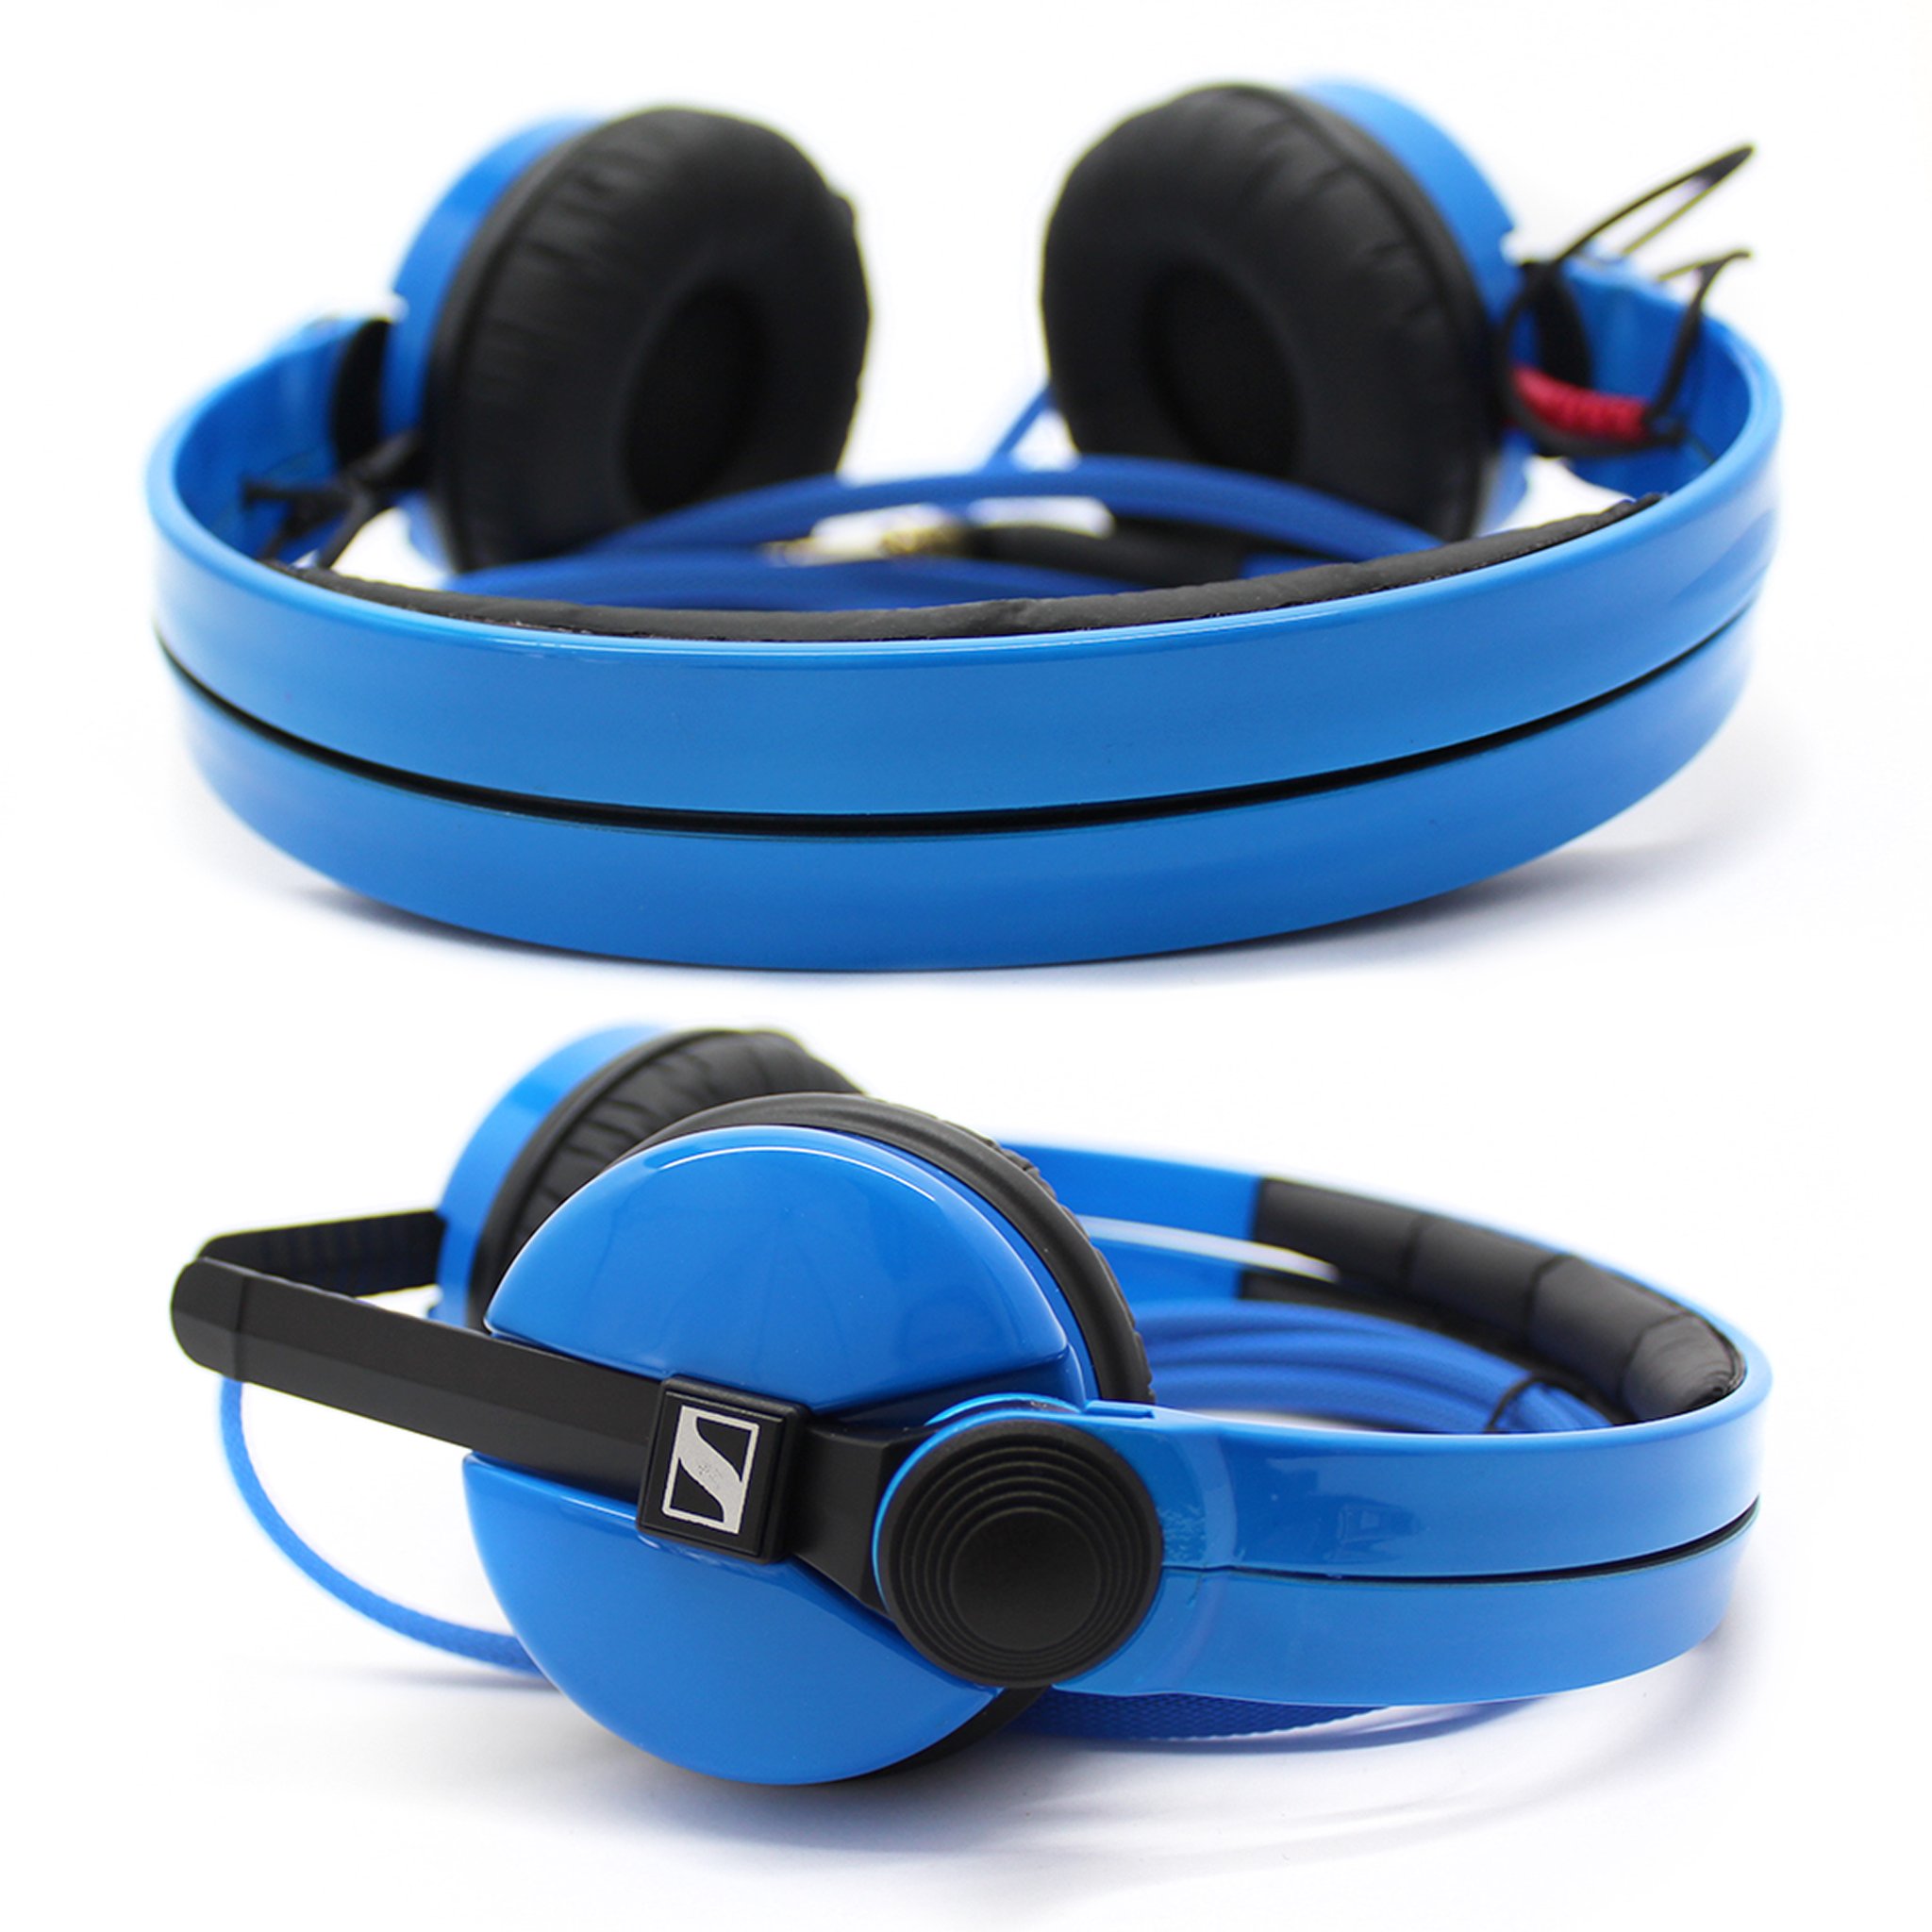 Custom Cans on "HD25s blue #Sennheiser #HD25 # headphones #blue https://t.co/ZrytzuUO6t" / Twitter